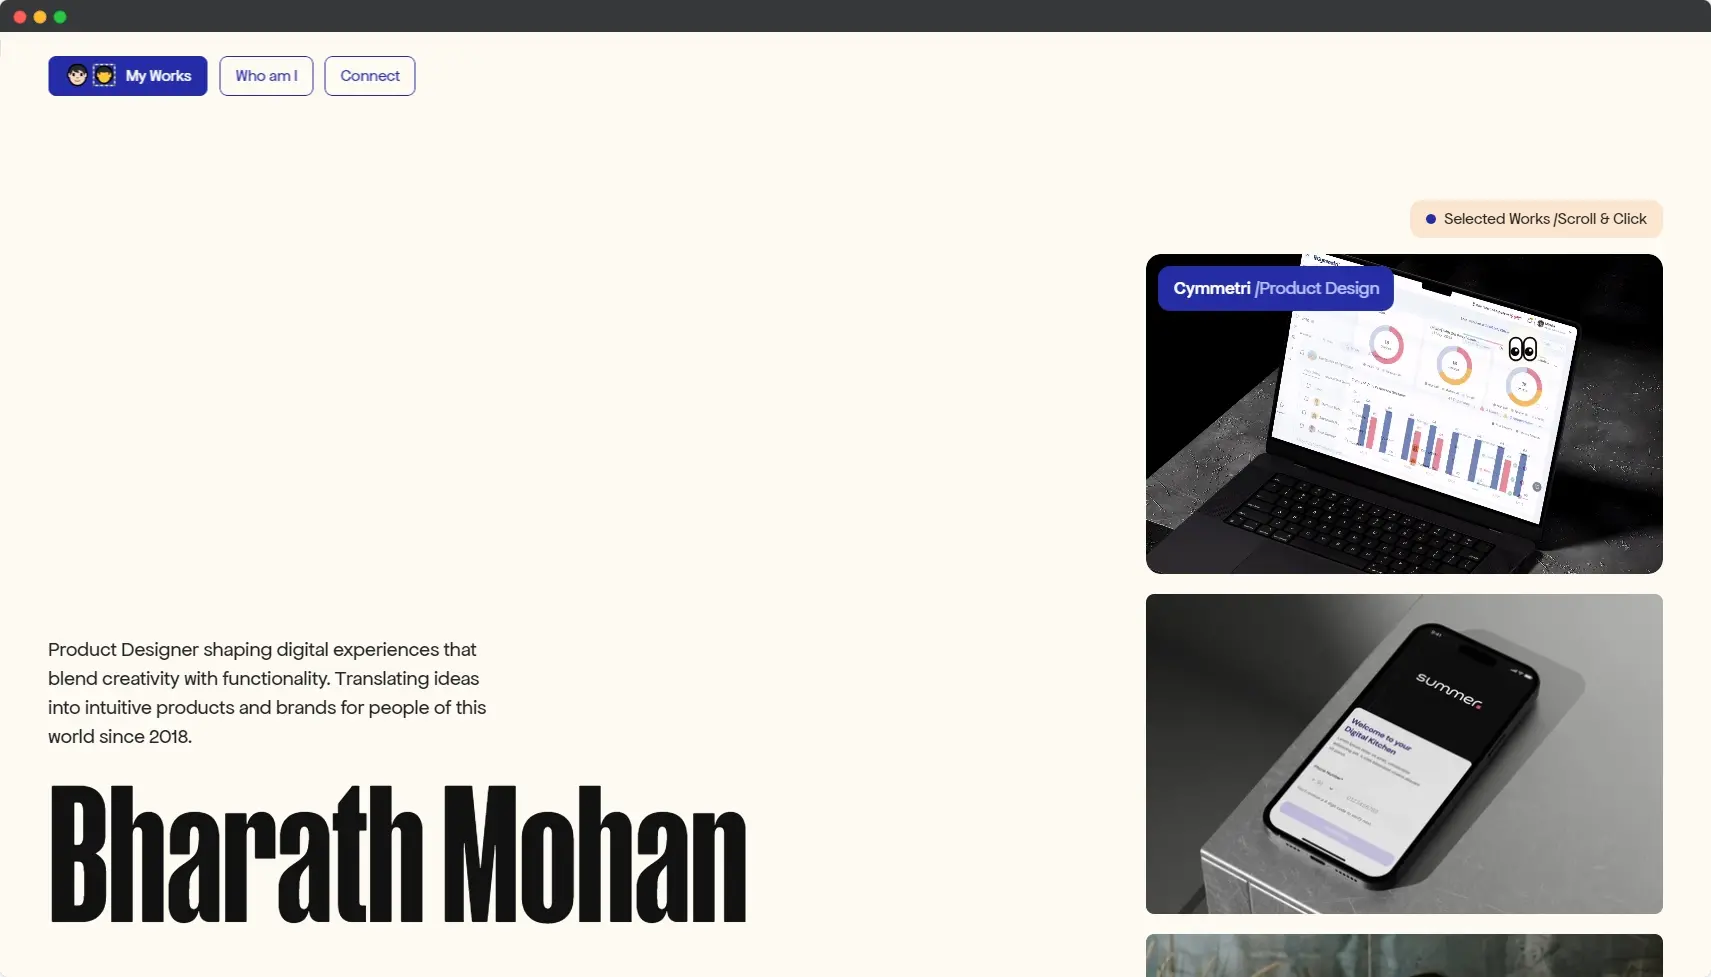 Blogduwebdesign inspiration web portfolio product designer bharath mohan